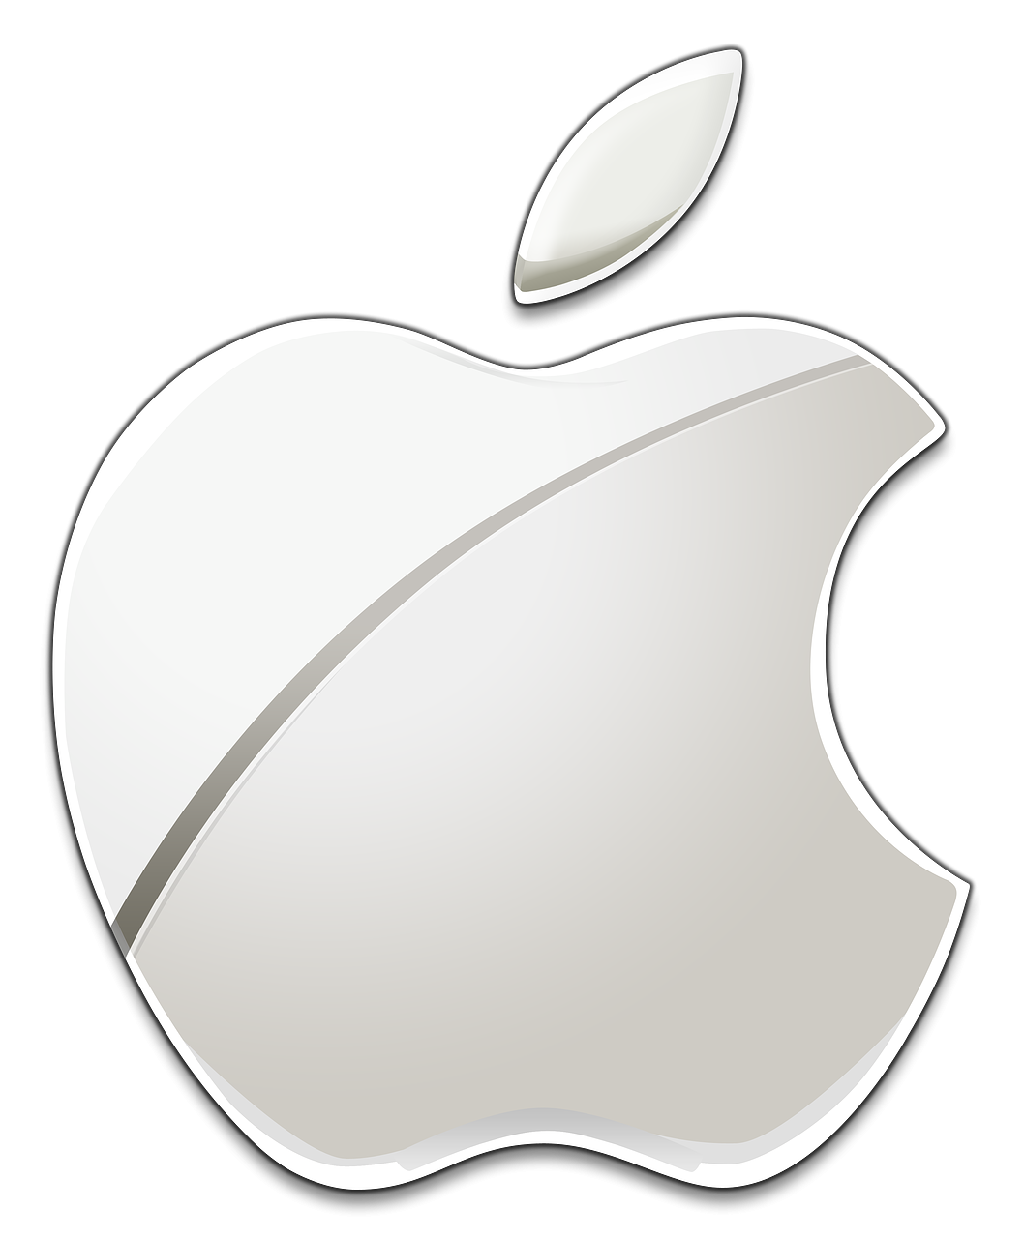 https://0201.nccdn.net/1_2/000/000/094/d70/official-apple-logo-png-1024x1238.png